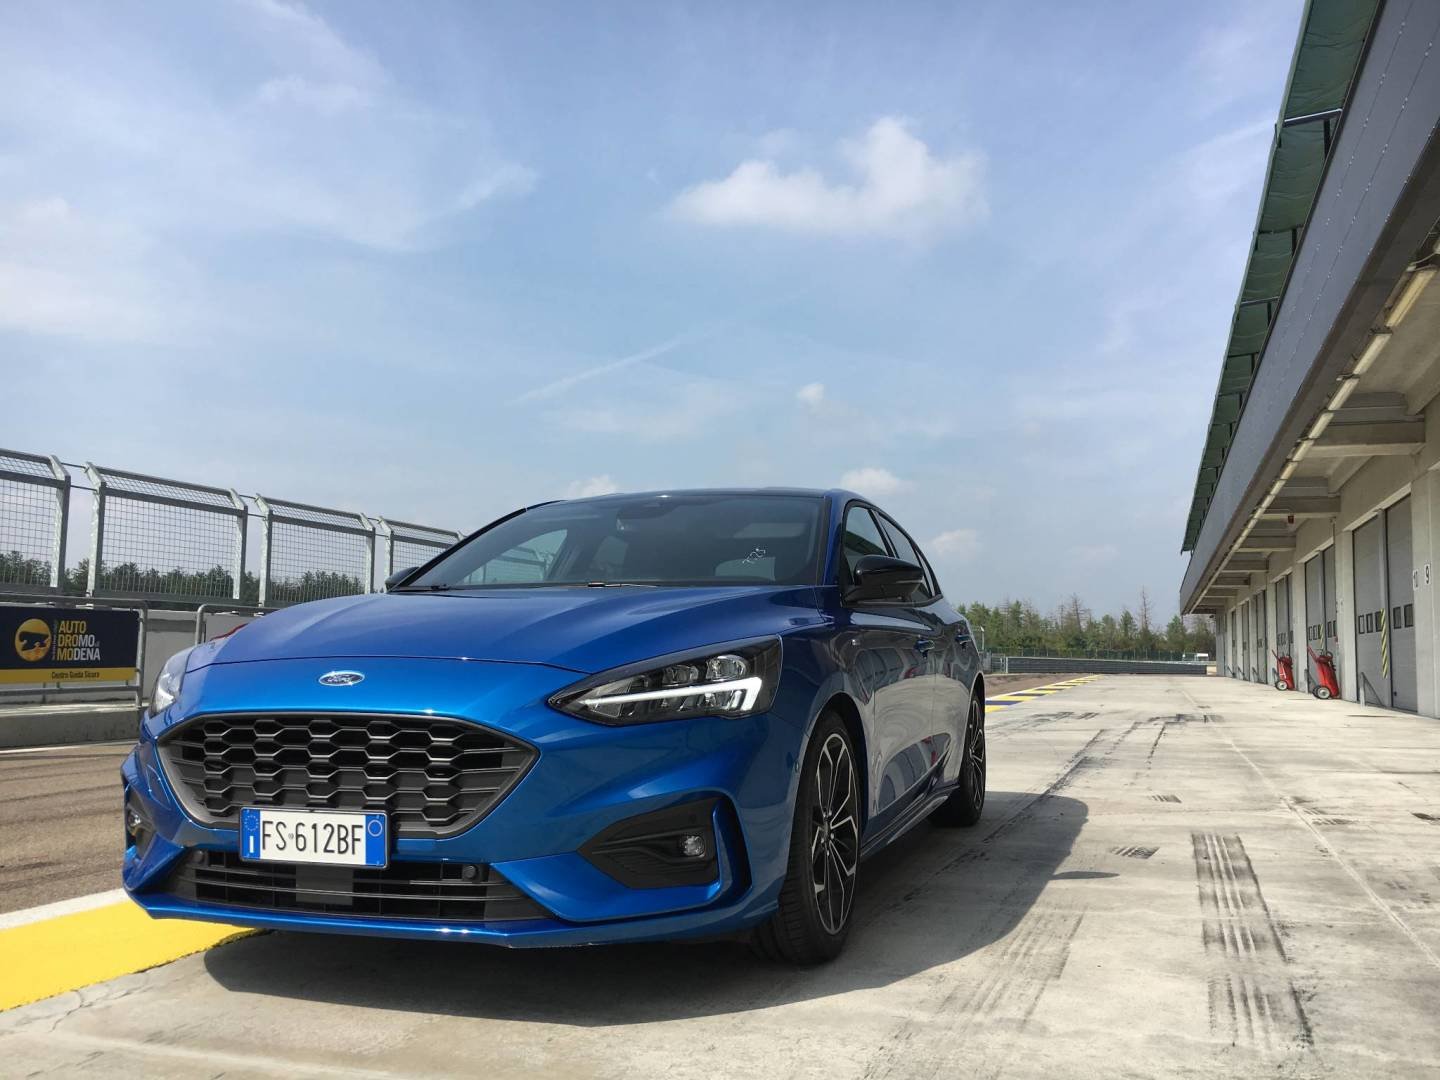 Immagine di Tech Sessions con la nuova Ford Focus all'autodromo di Modena